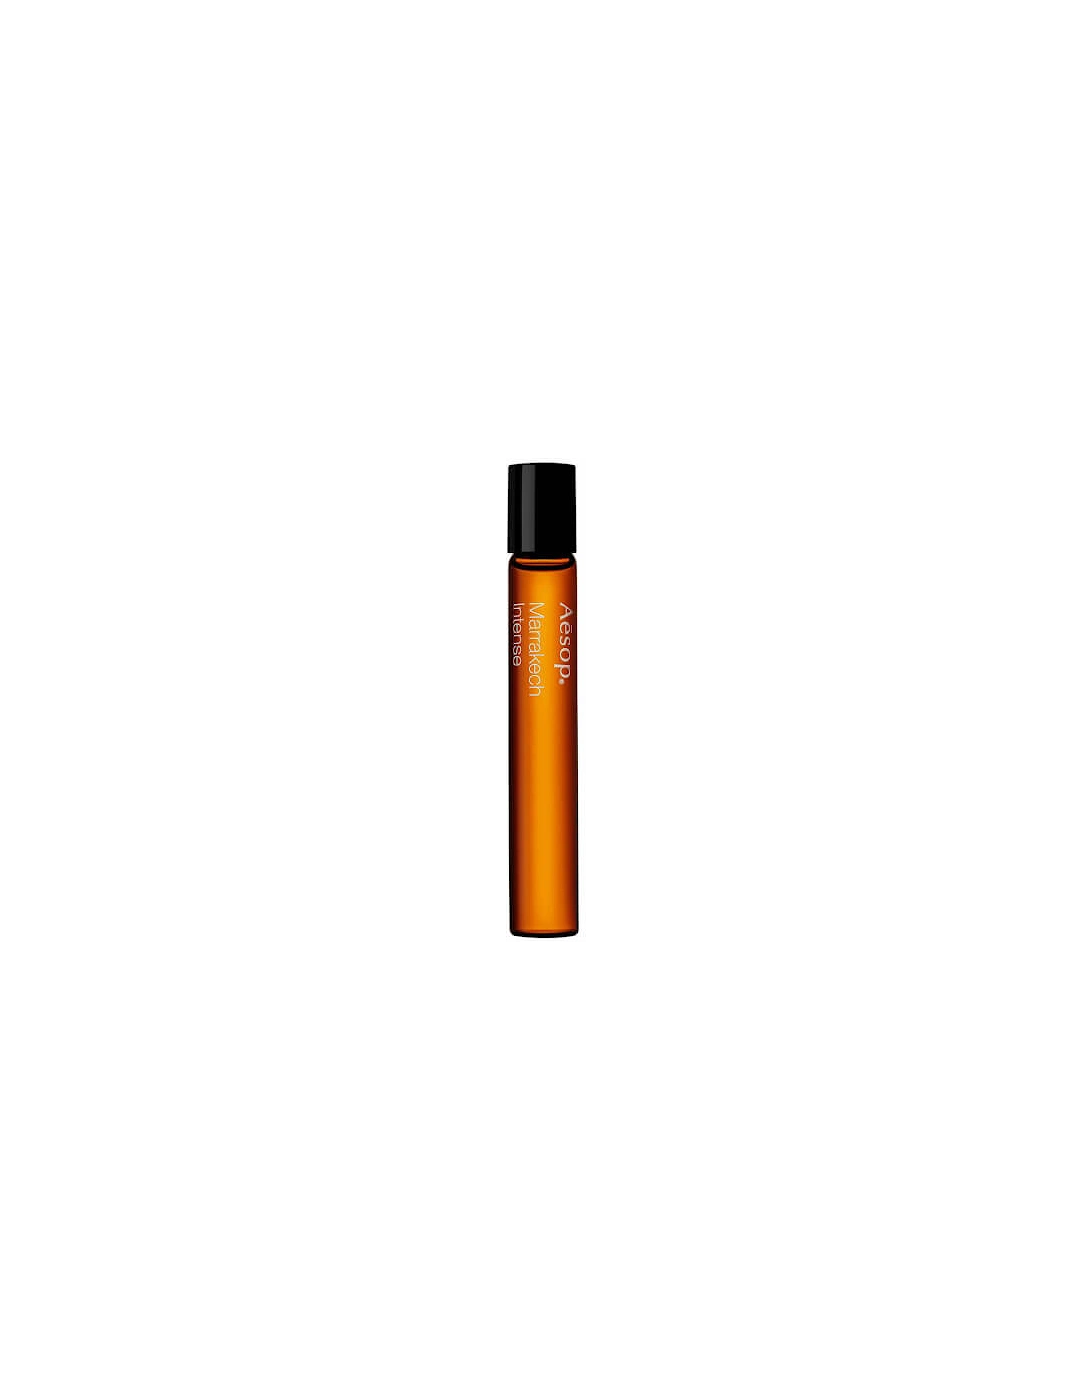 Marrakech Intense Parfum 10ml - Aesop, 2 of 1